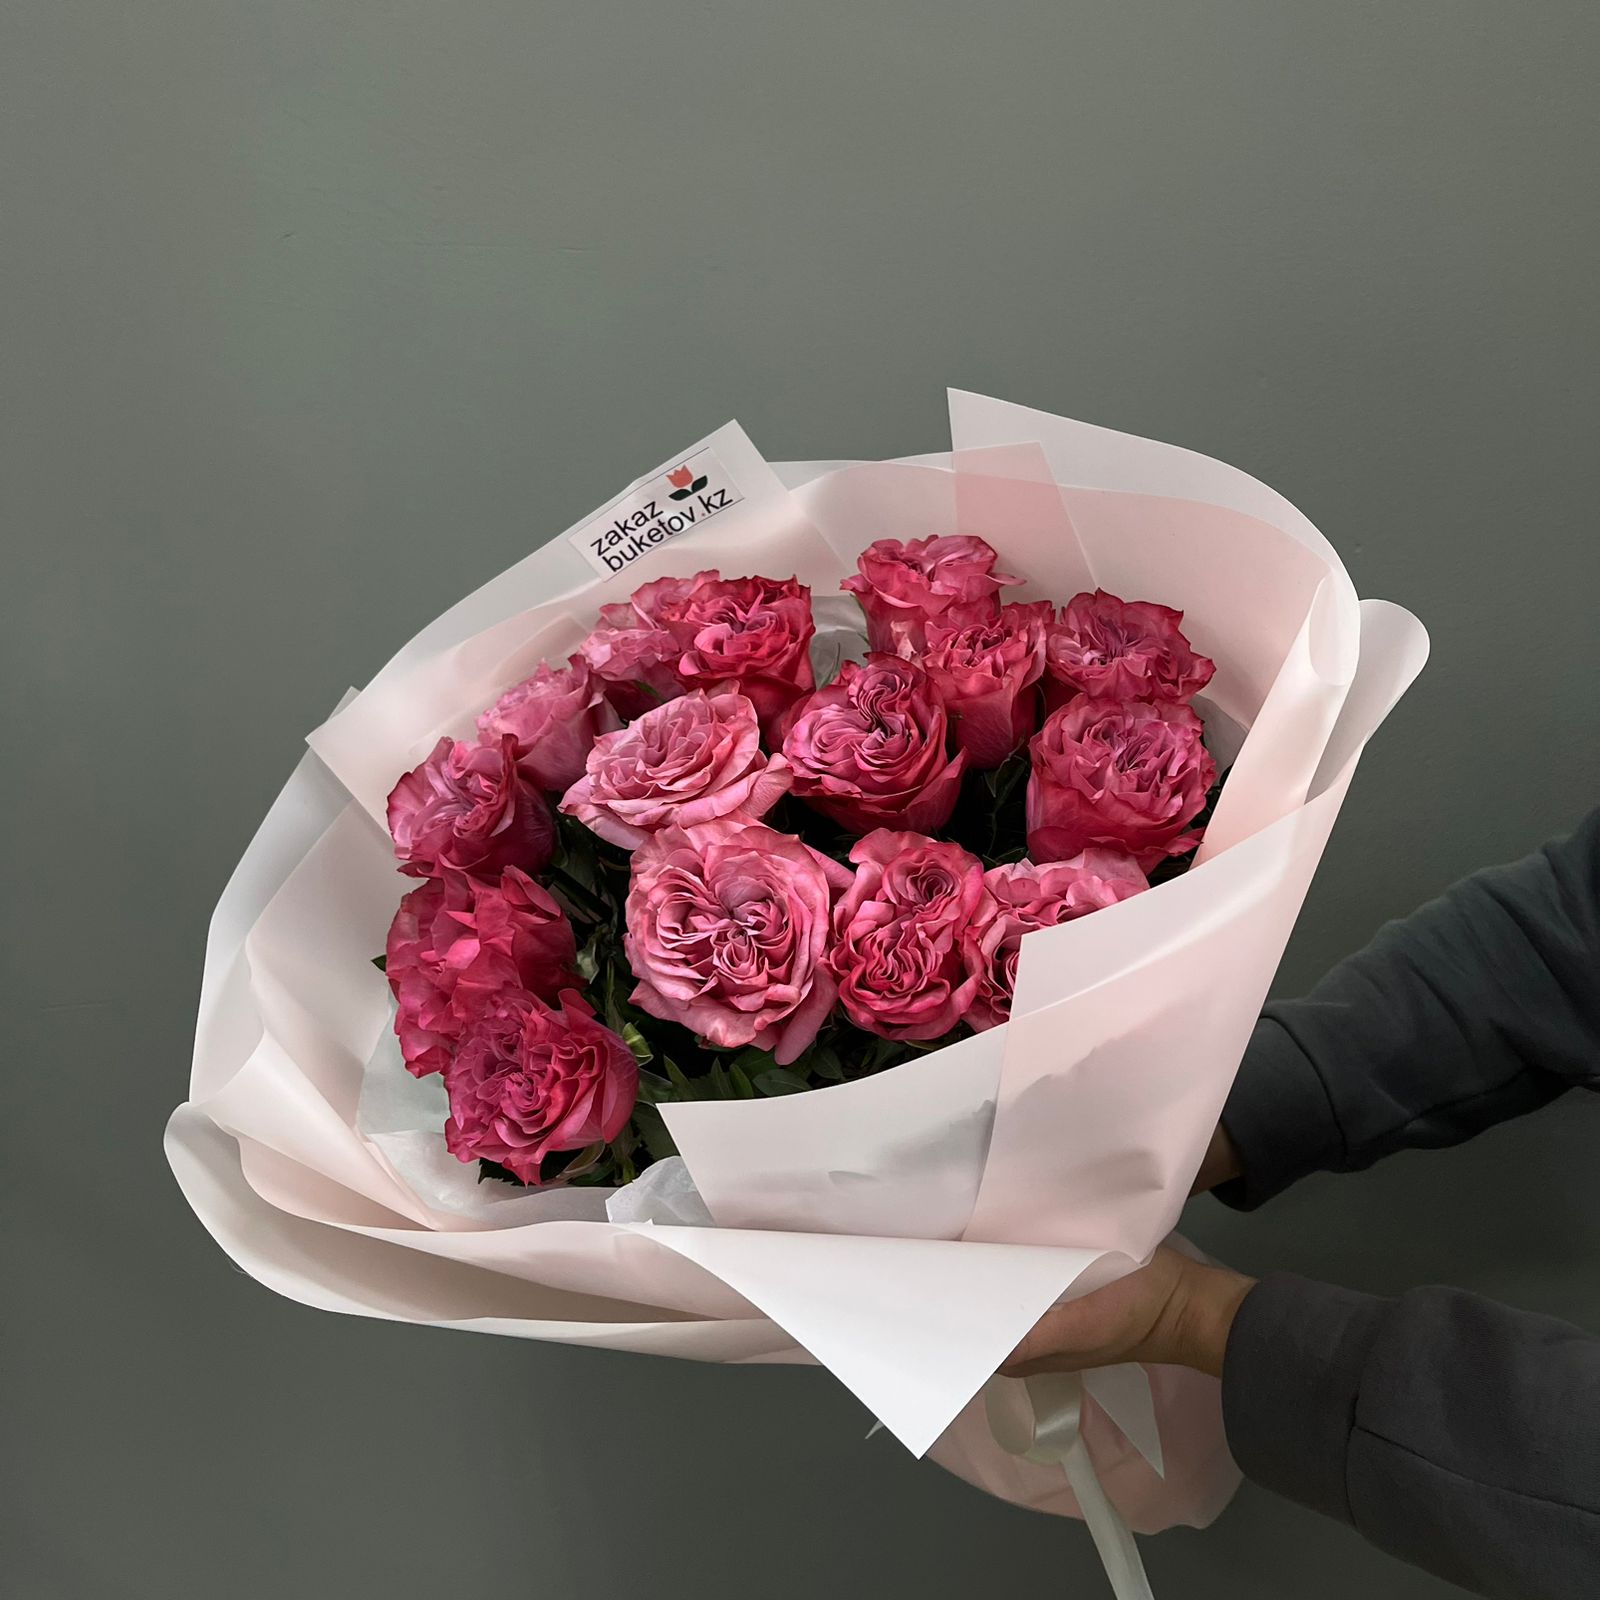 Моно букет "Поцелуй" из 15 пионовидных роз